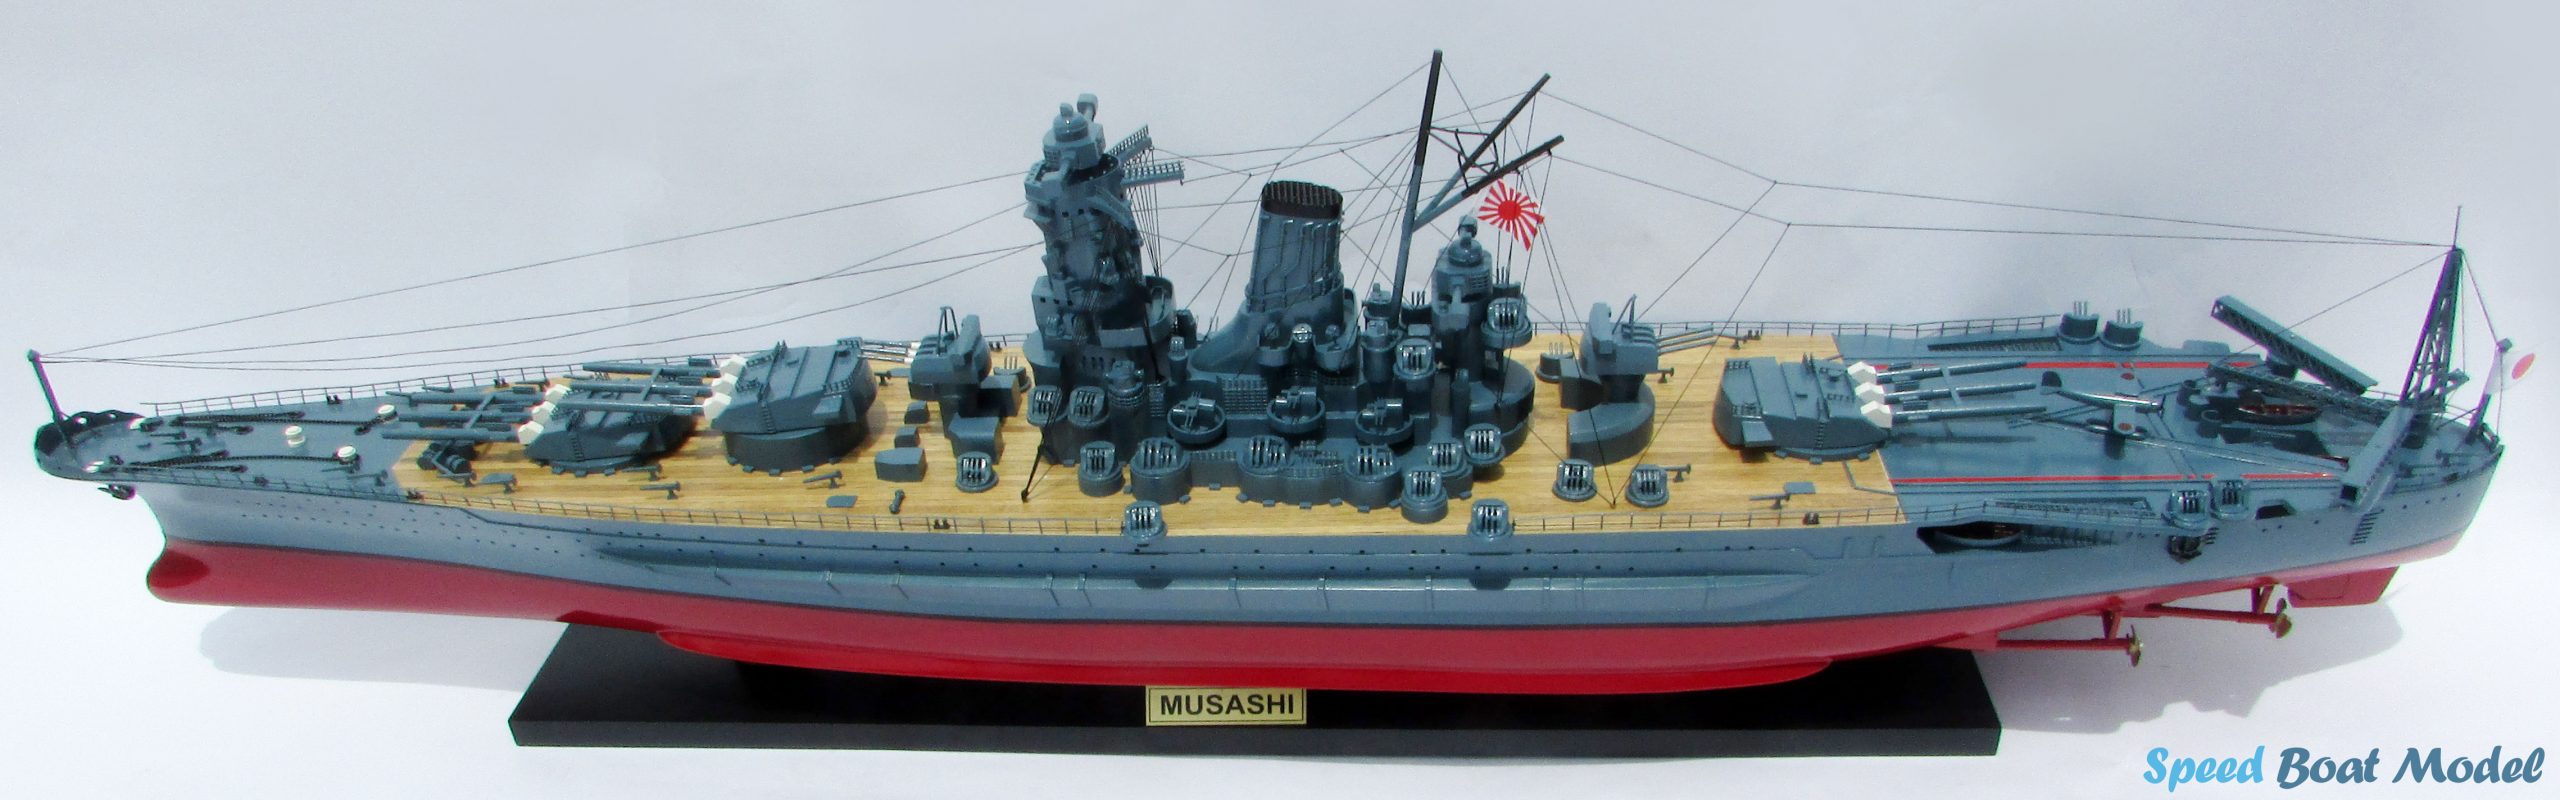 Musashi Warship Model 47.2"